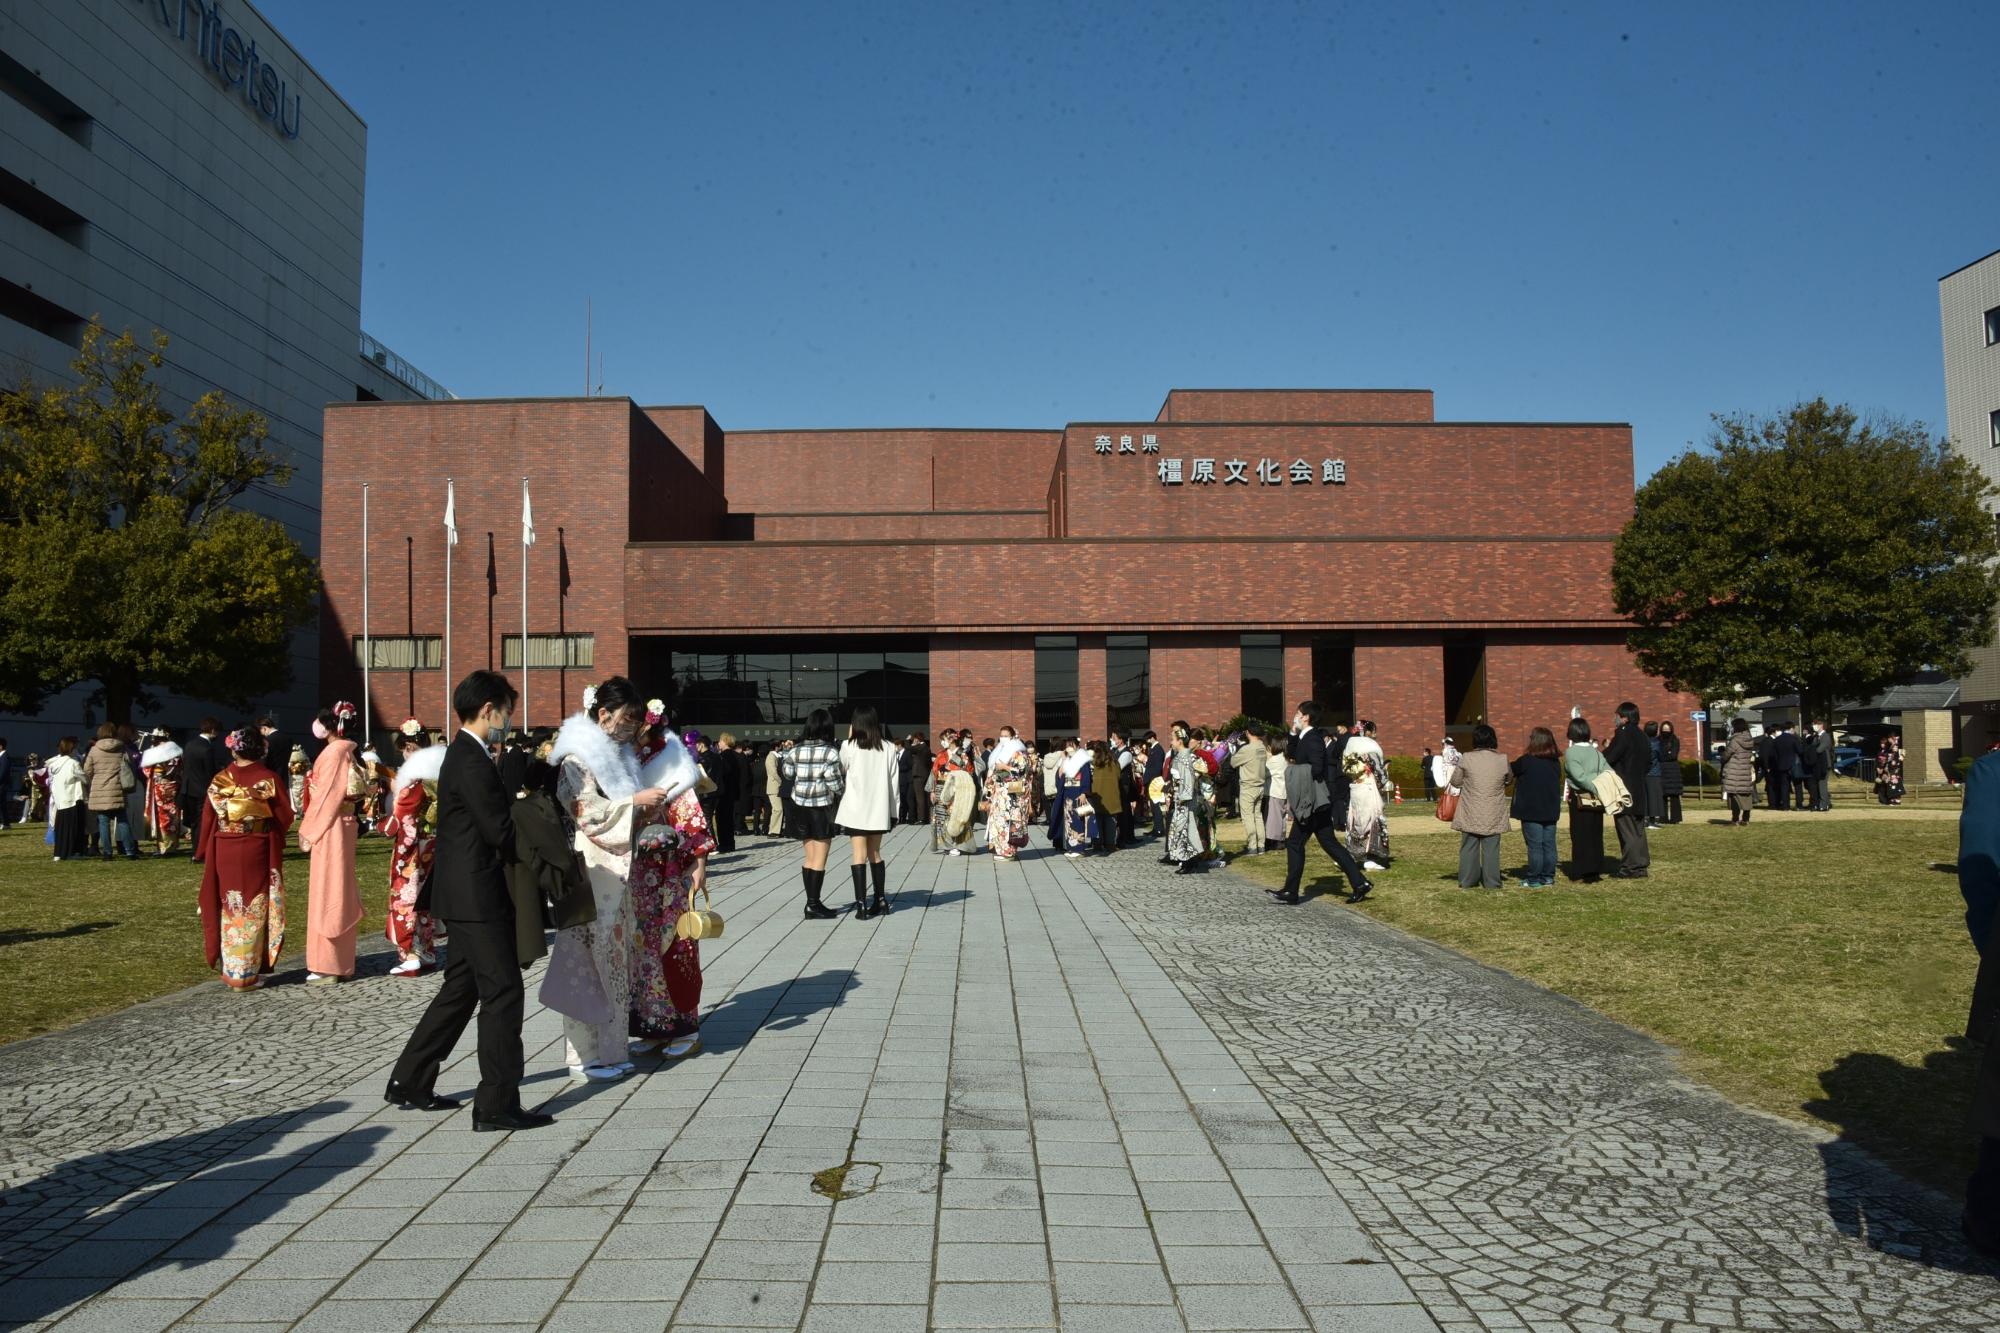 橿原文化会館を背景に成人の方々で賑わっている写真